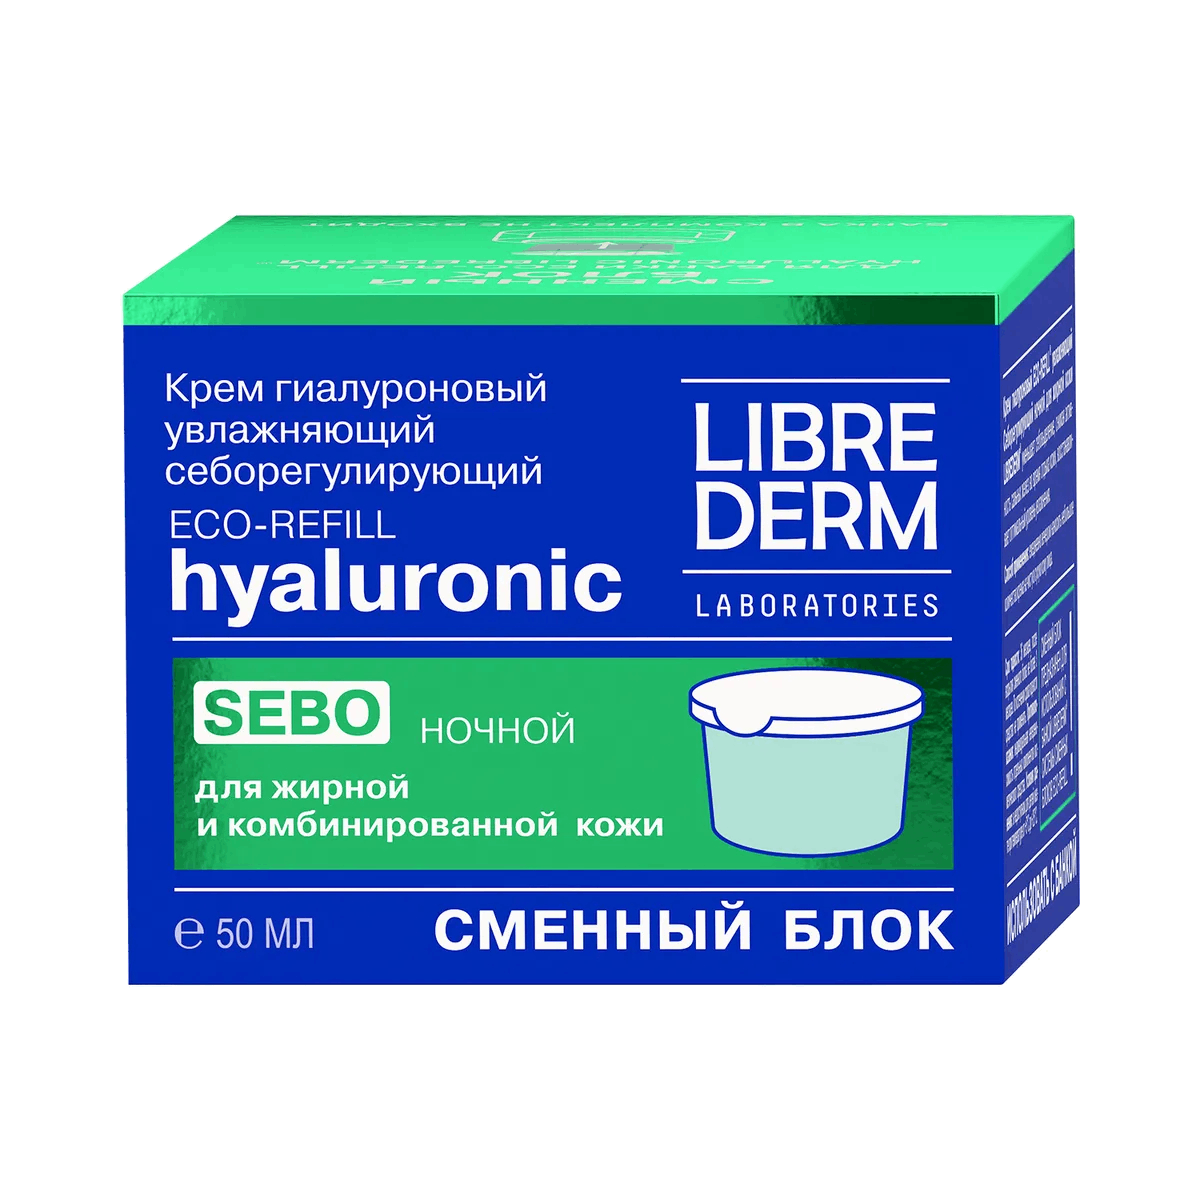 Eco-refill Гиалуроновый крем увлажняющий себорегулирующий ночной для жирной кожи, сменный блок, 50 мл, Librederm - фото 1